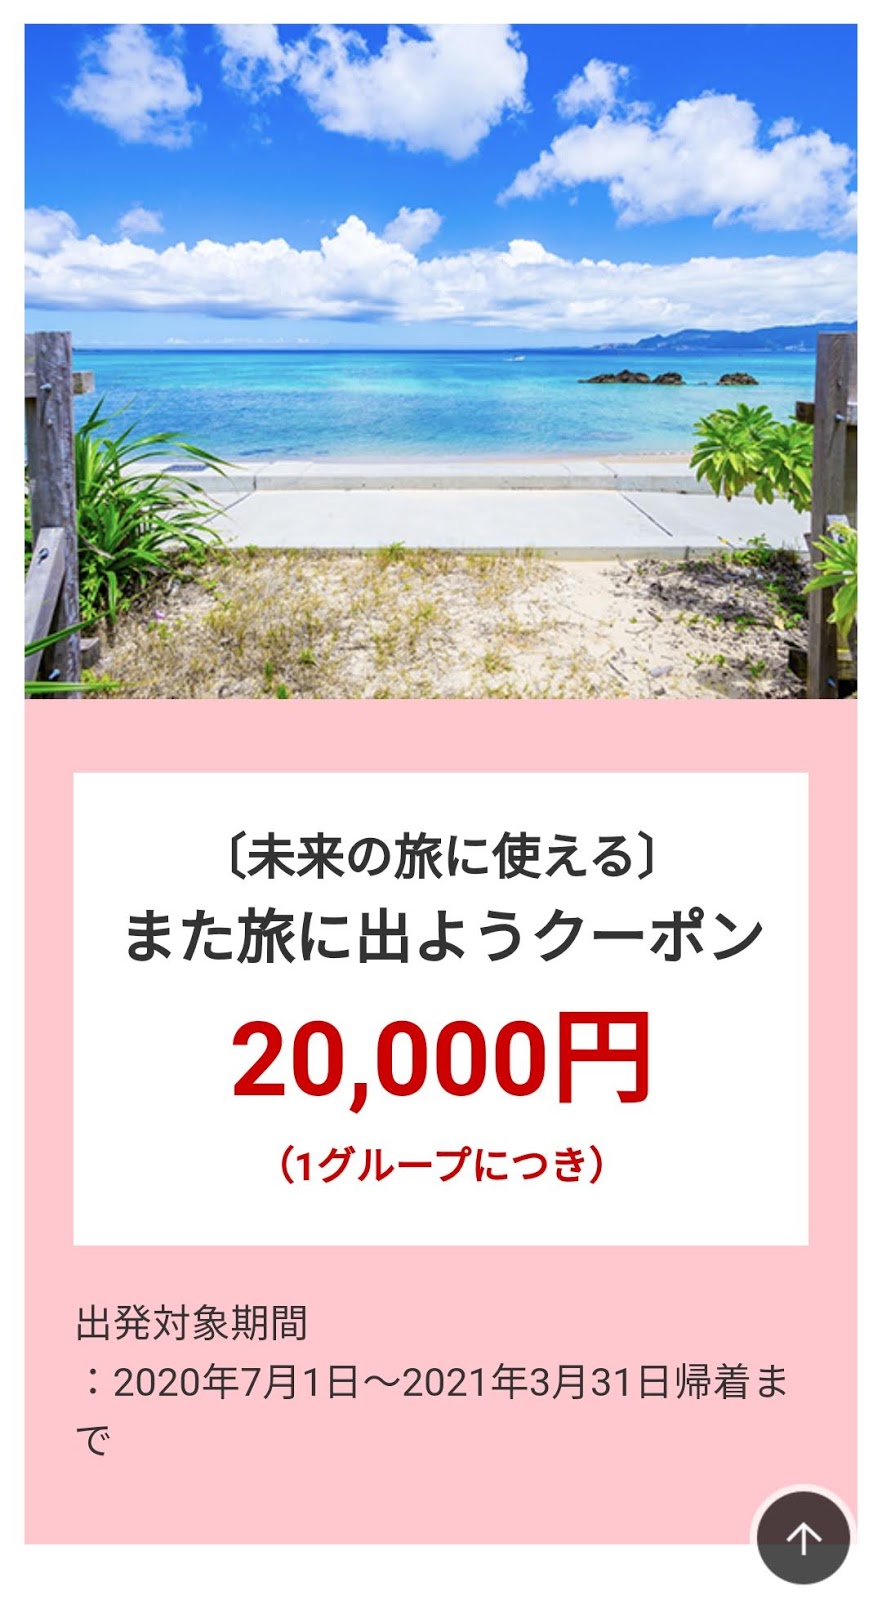 【クーポン】JAL国内ダイナミックパッケージ20,000円offクーポン（2名以上、40,000円以上で利用可）|Yutaka's blog